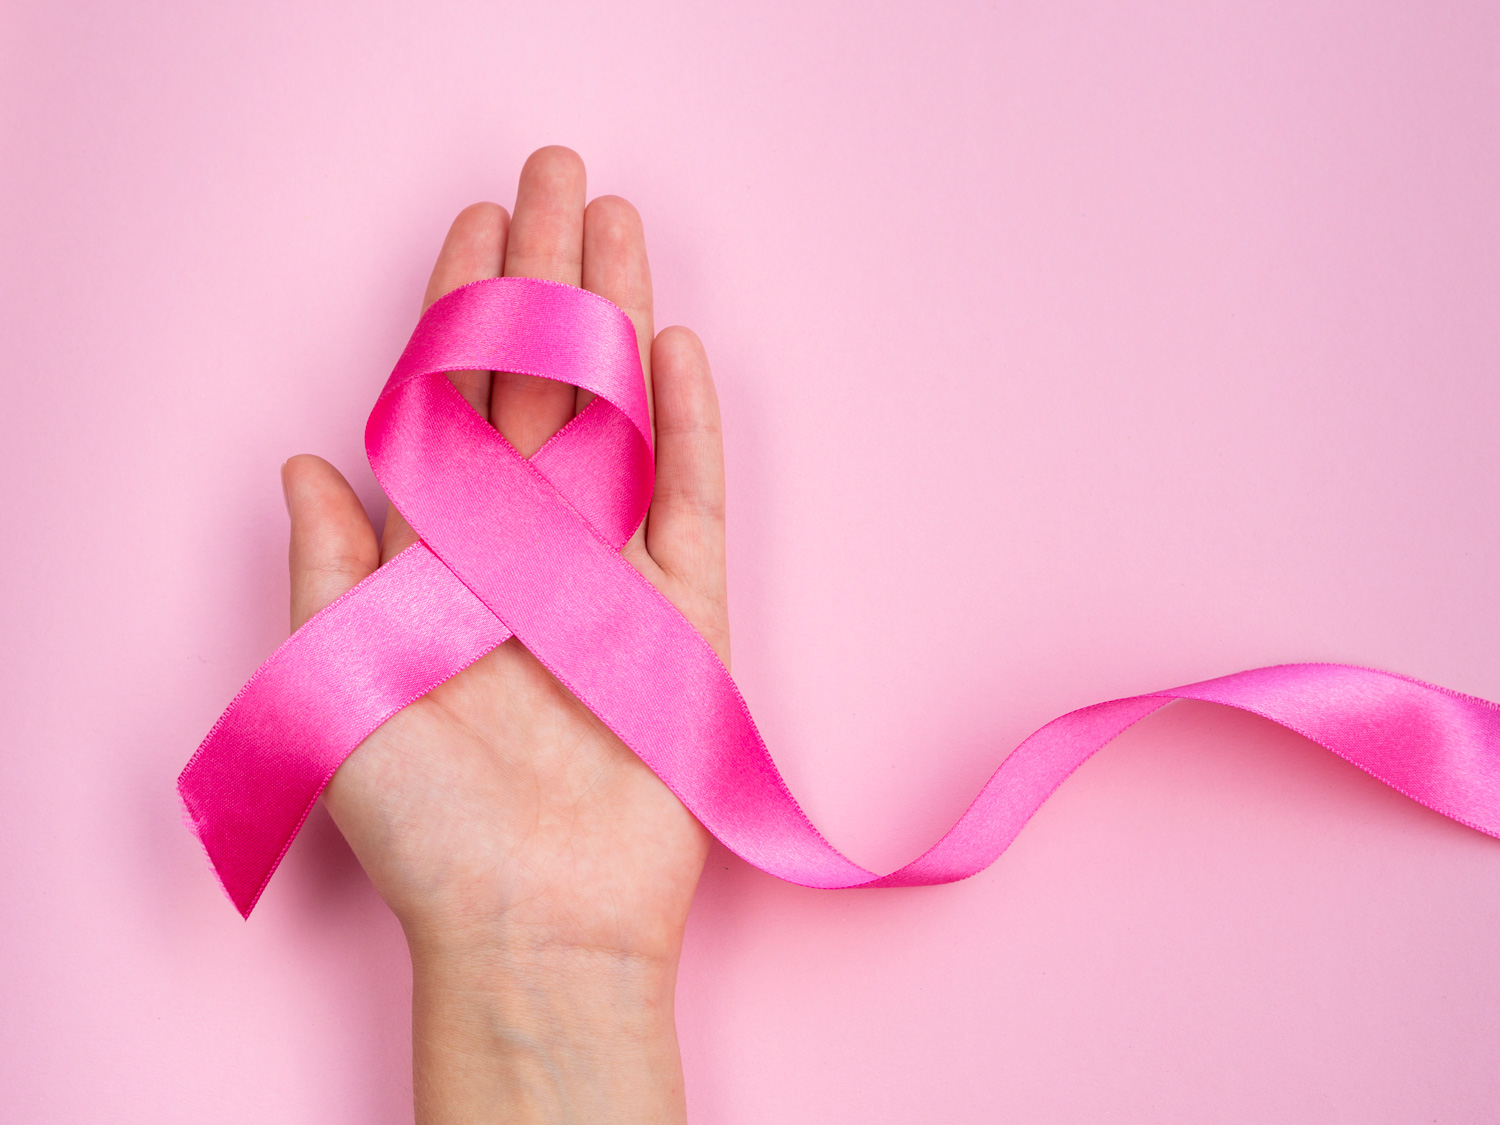 Detectan cáncer de mama en niña de 7 años